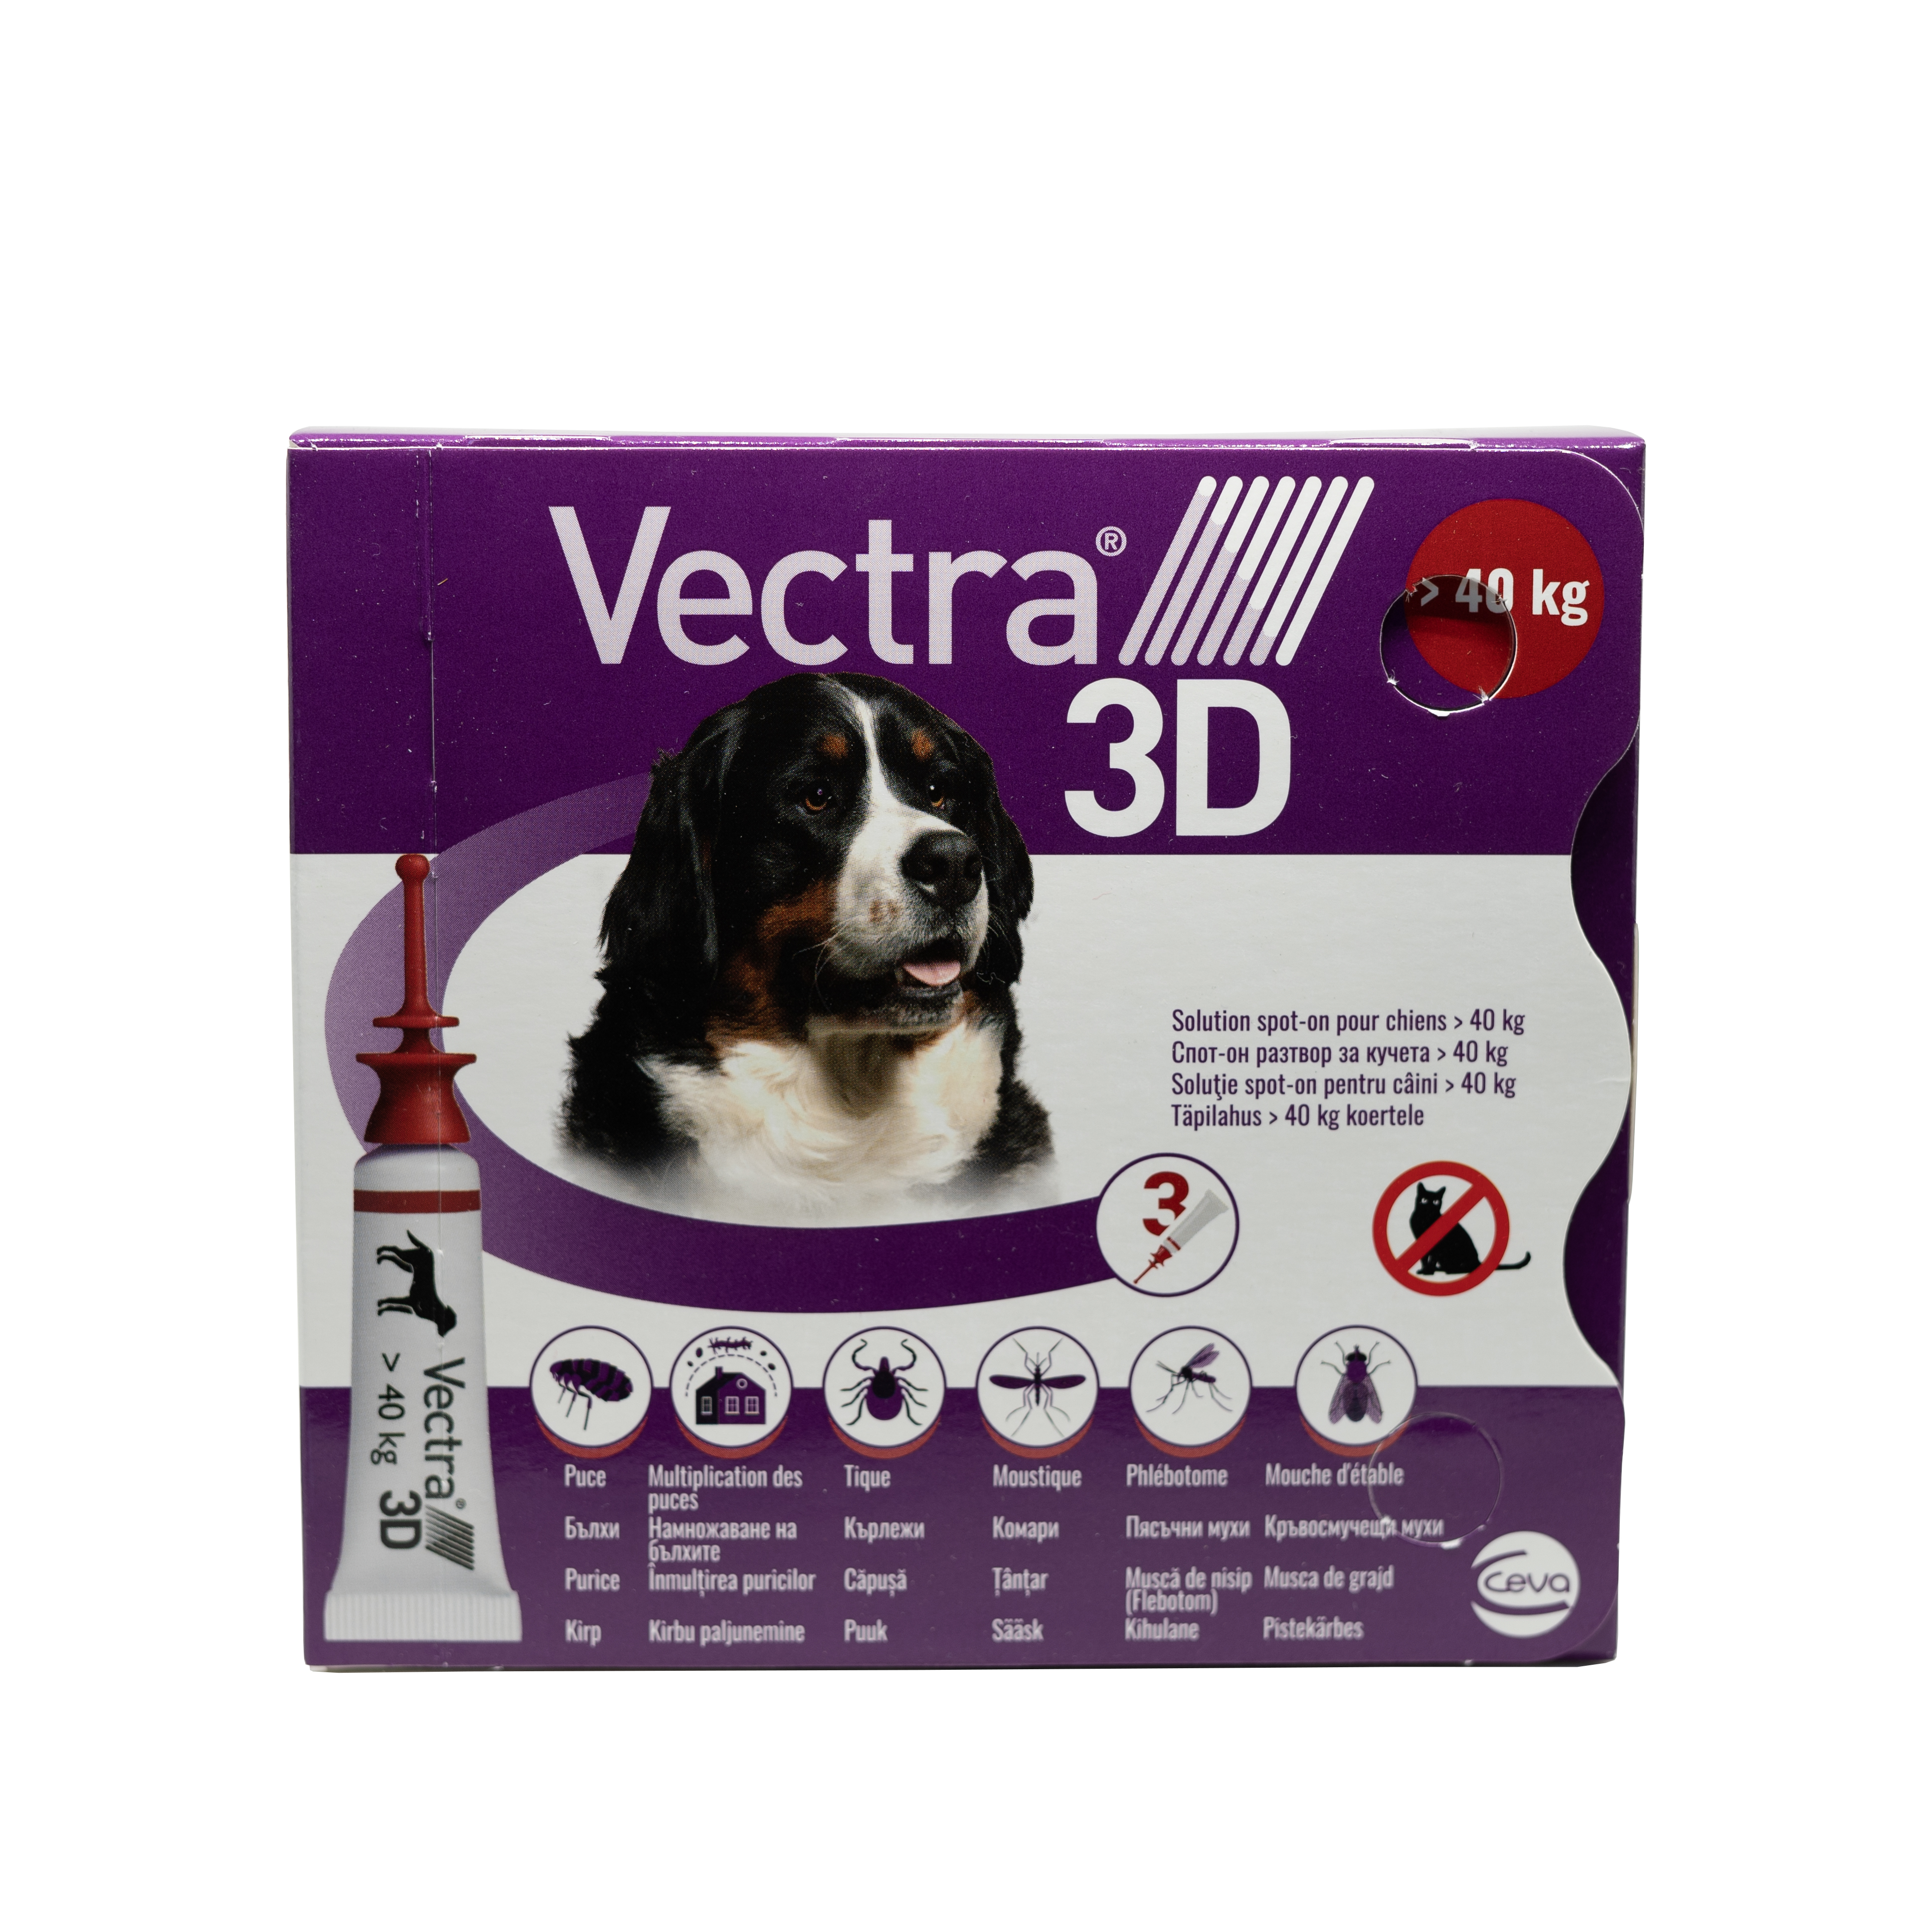 Vectra 3D pentru caini de +40kg 3 pipete antiparazitare Ceva Sante imagine 2022